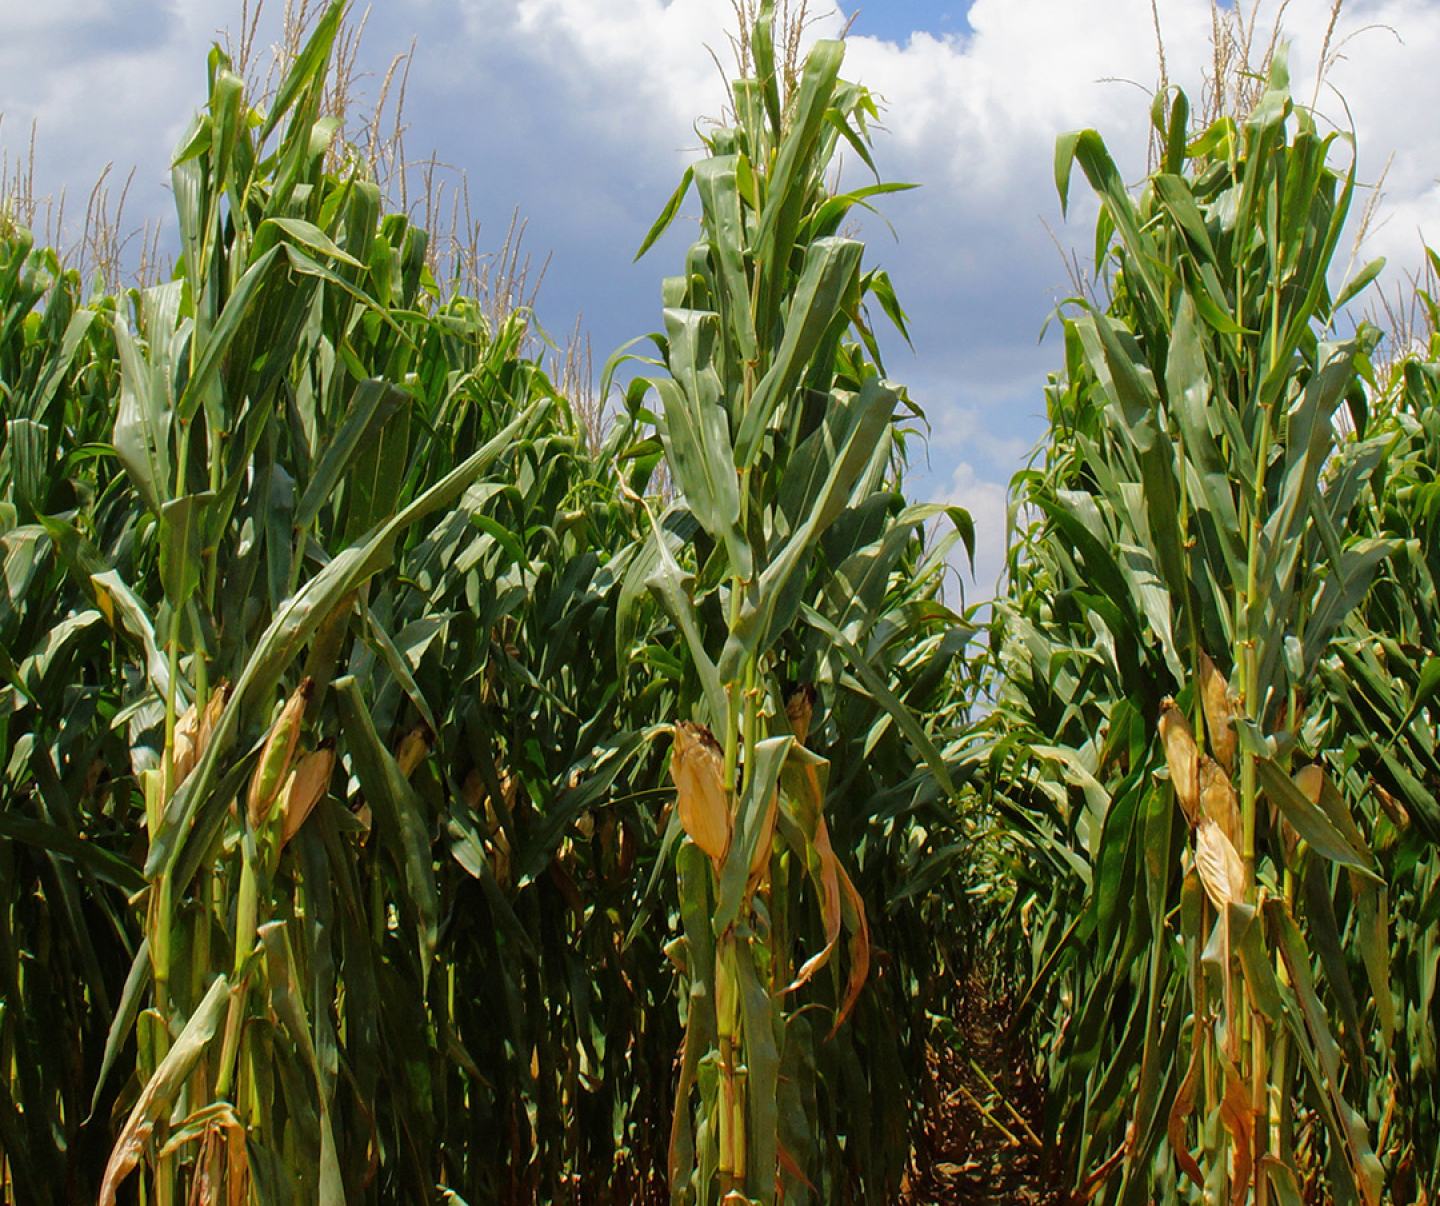 Rows of corn crop